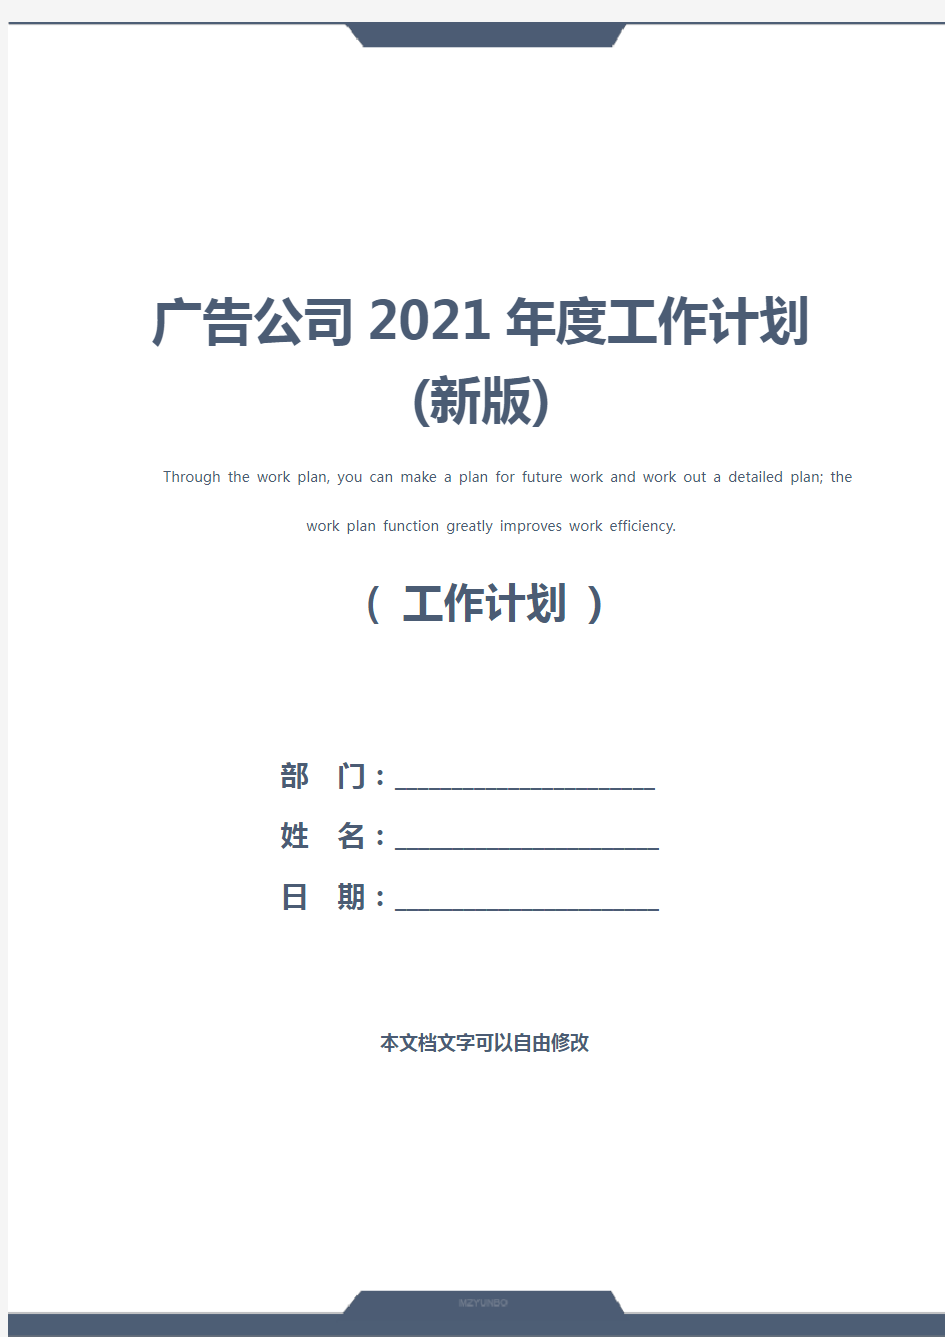 广告公司2021年度工作计划(新版)